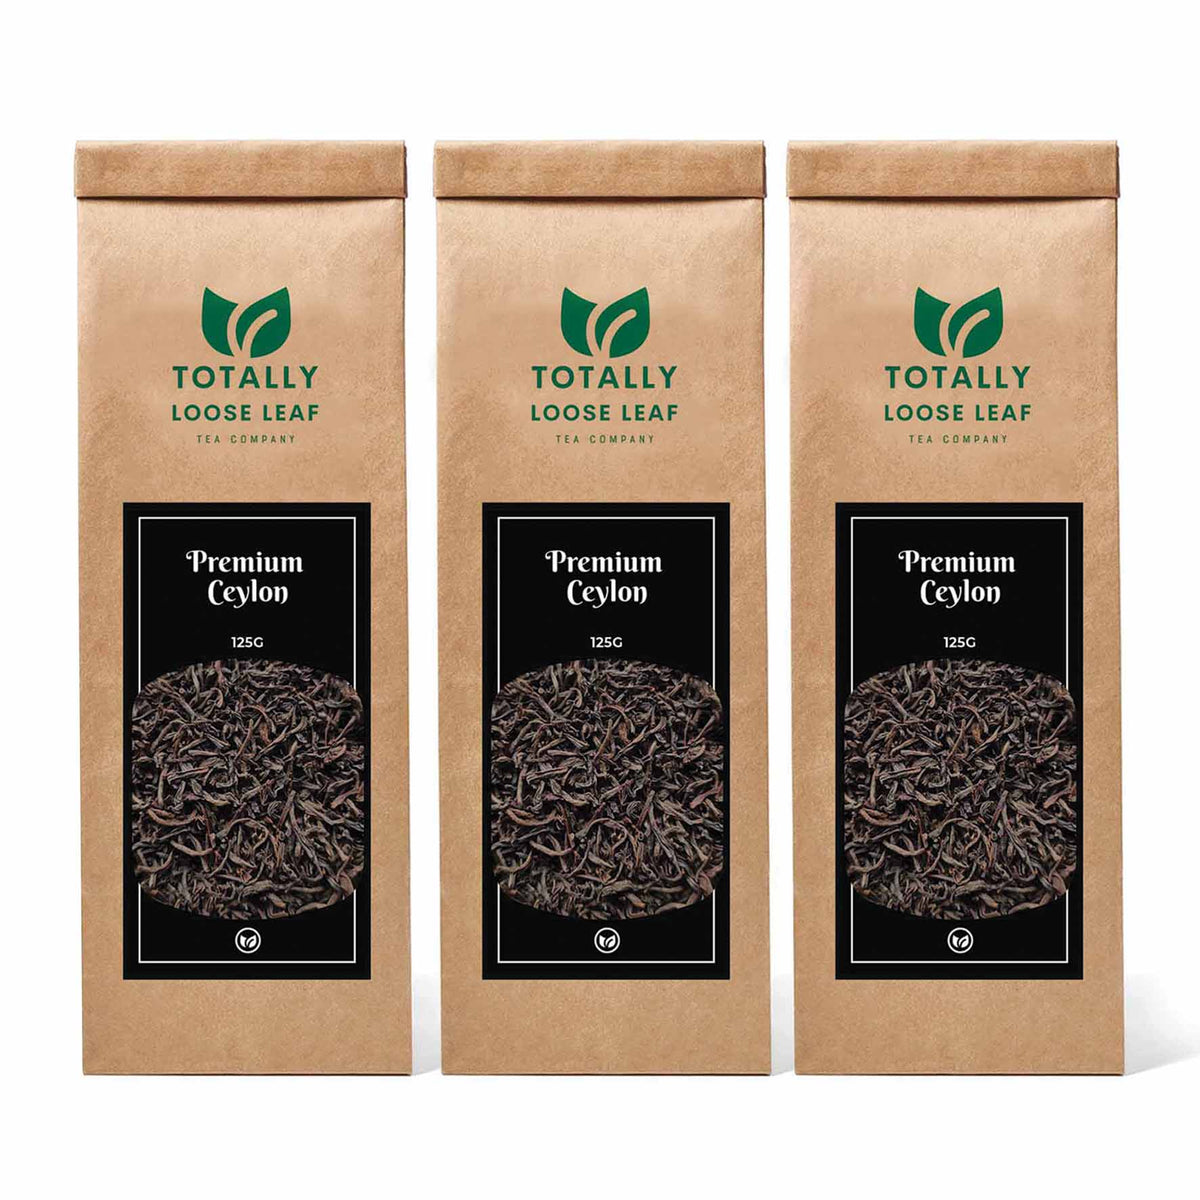 Premium Ceylon Black Estate Loose Leaf Tea - three pouches